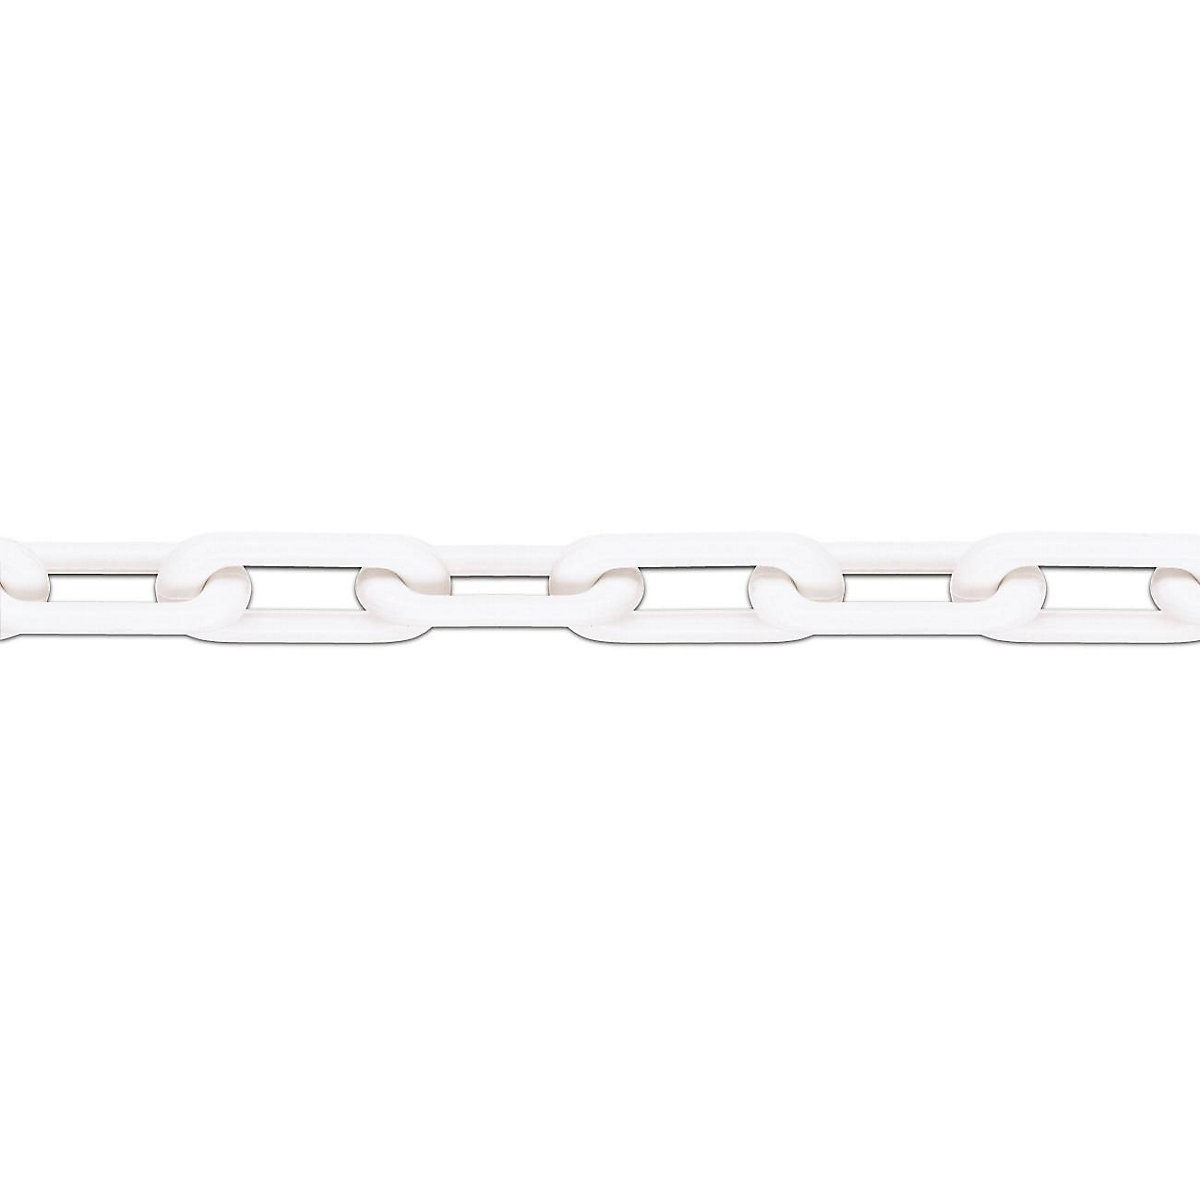 Kakovostna najlonska veriga, kakovost MNK 8, dolžina 25 m, bela, od 4 kosov-6